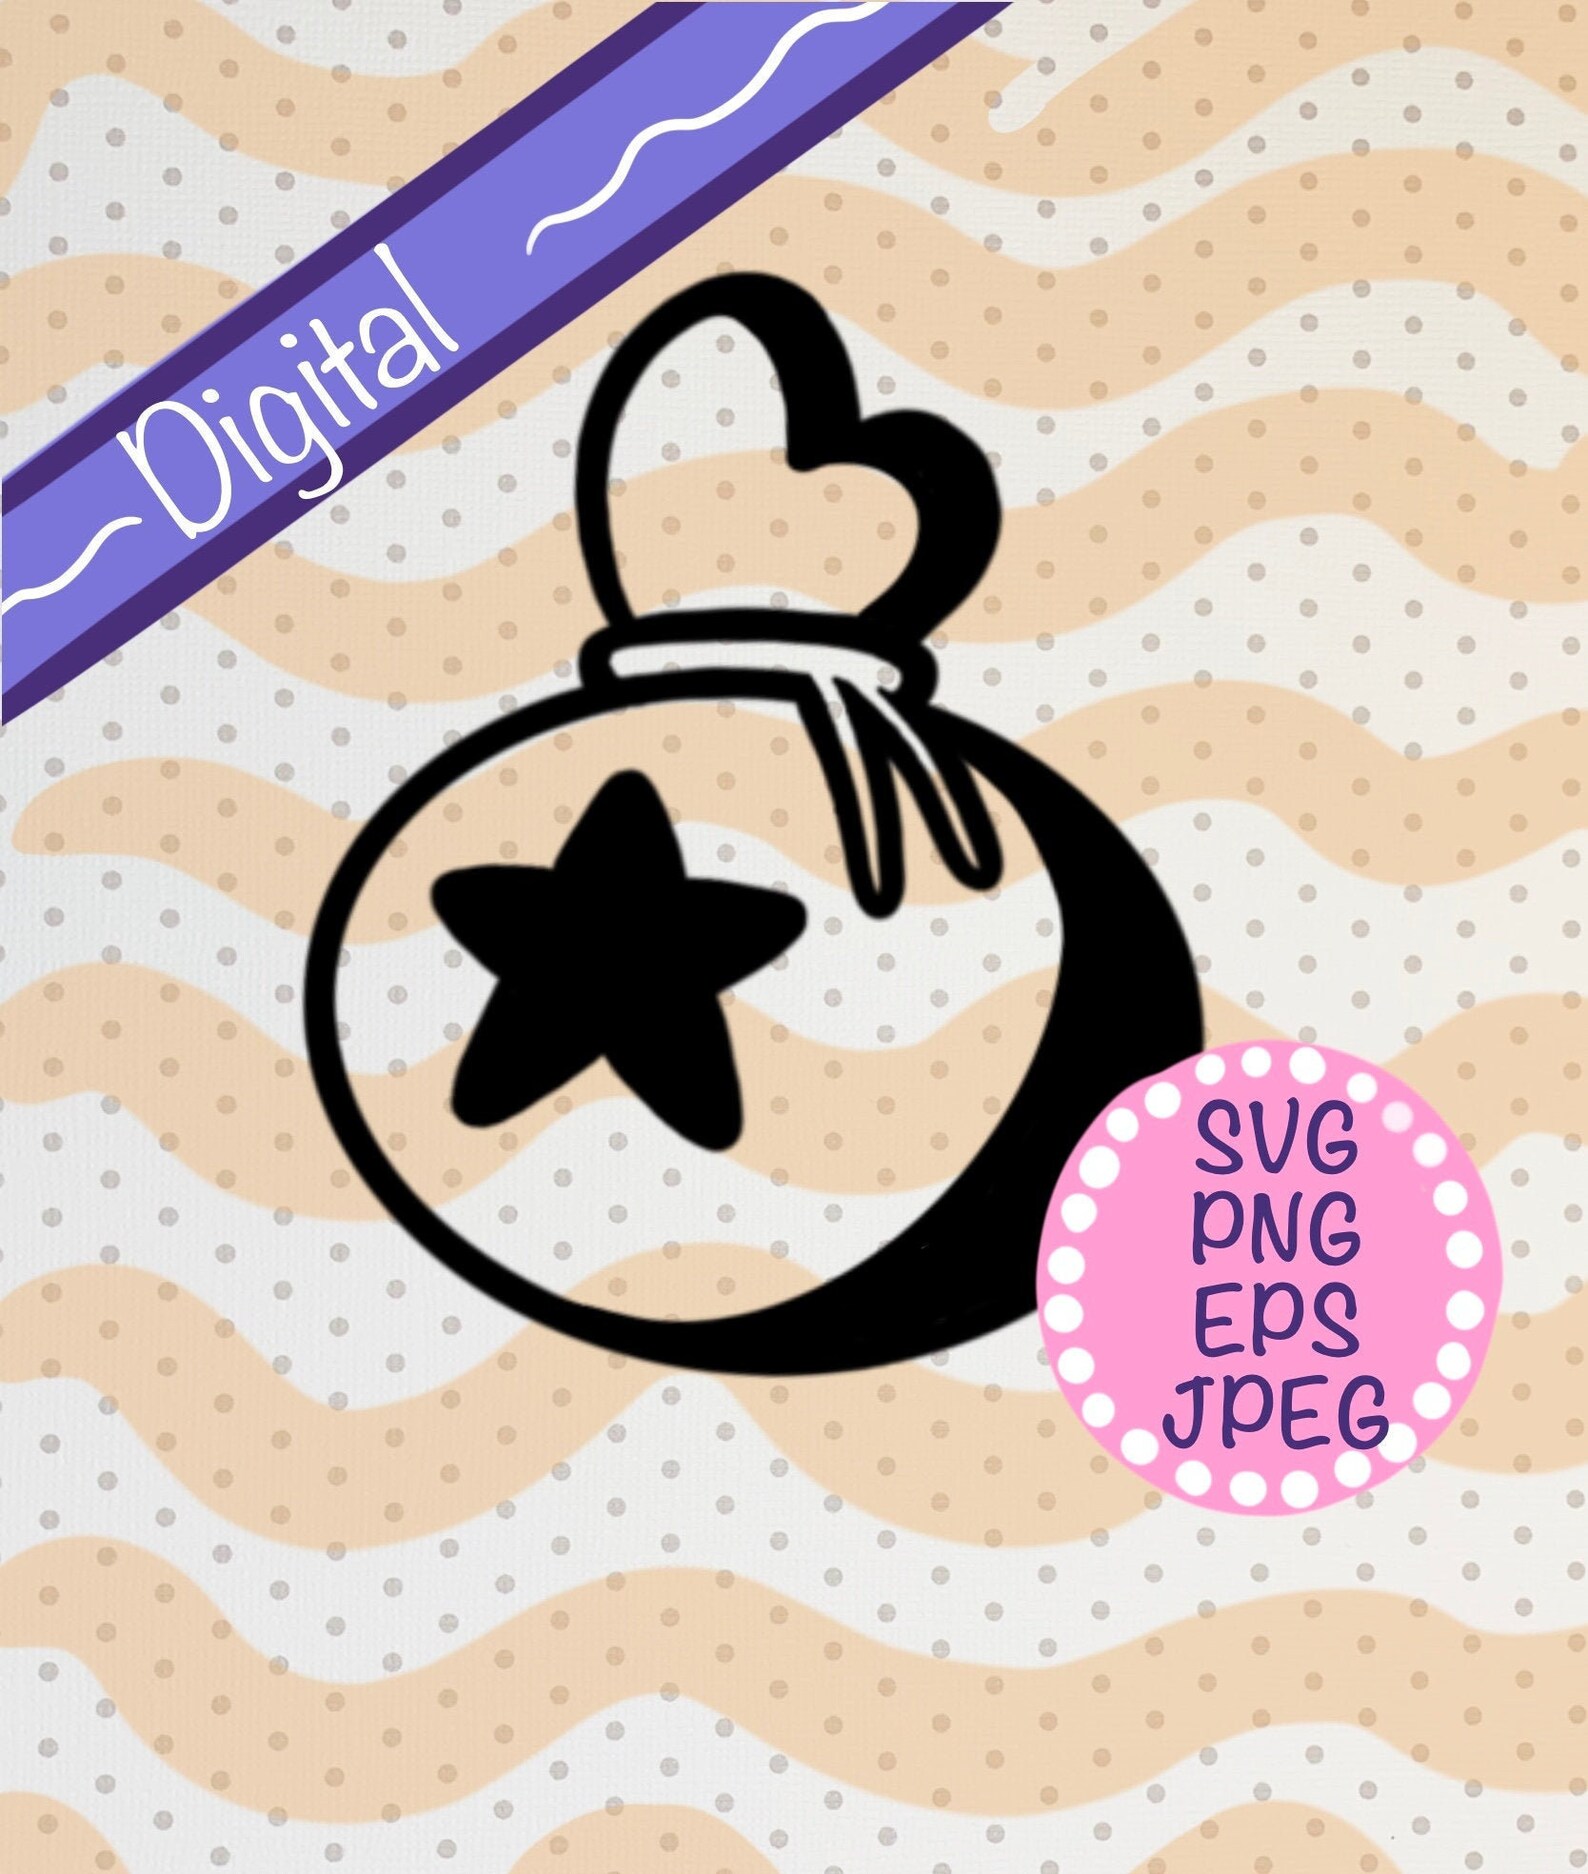 Download Bells Bag Animal Crossing digital image SVG PNG EPS | Etsy